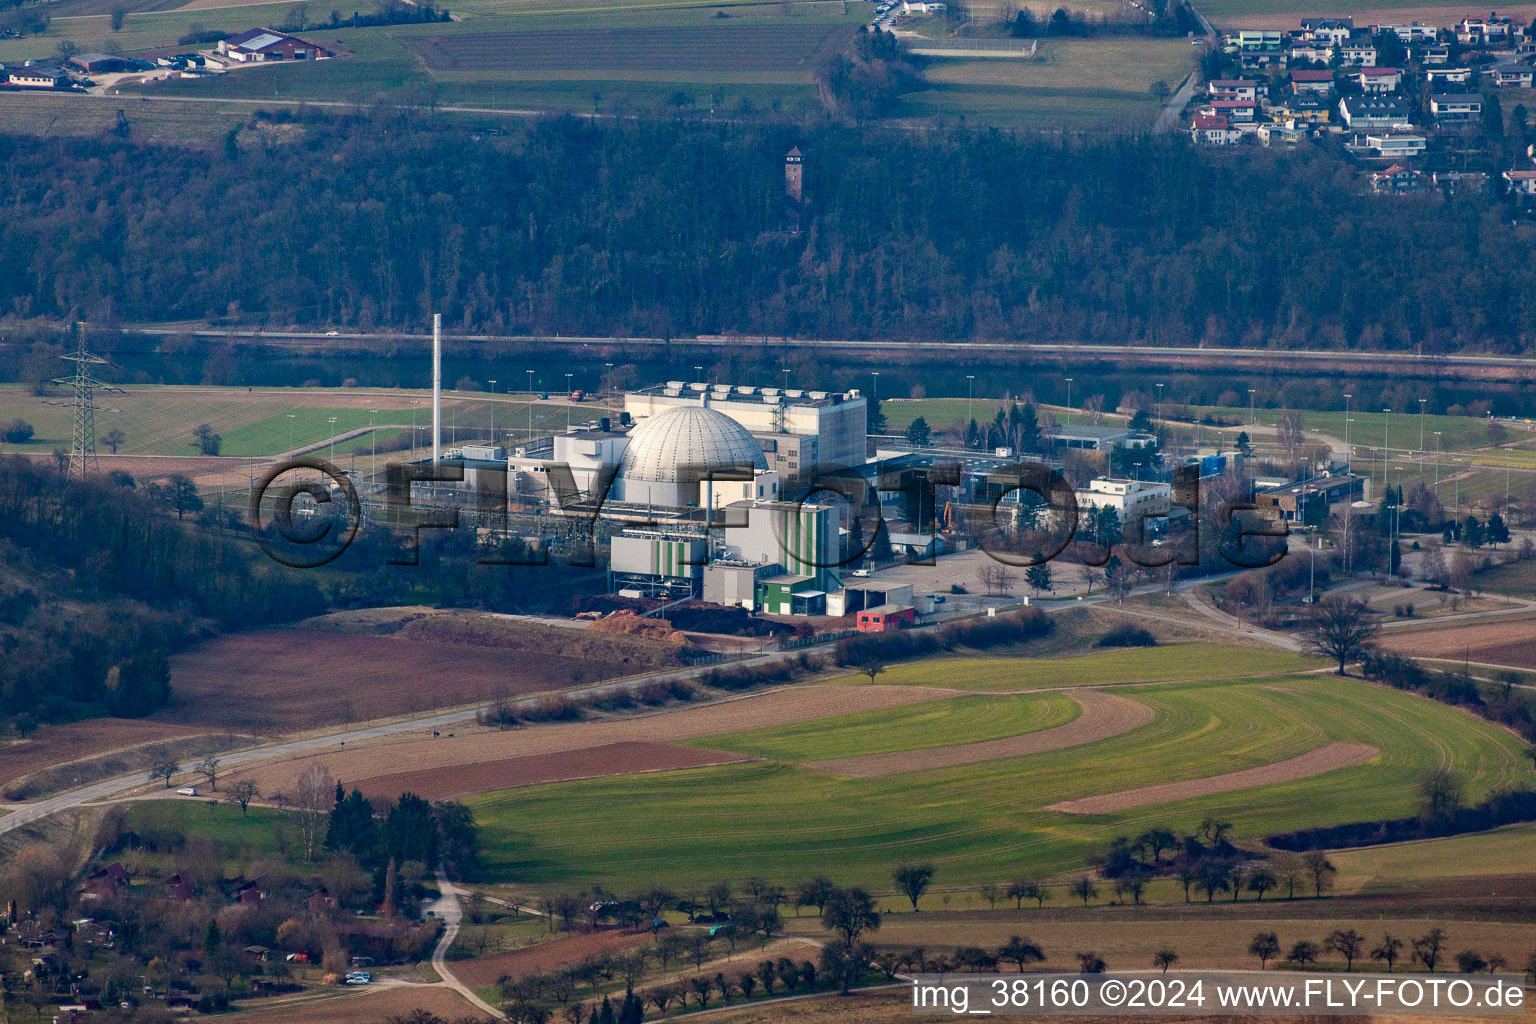 Vue aérienne de Blocs de réacteurs et installations déclassés de la centrale nucléaire - Centrale nucléaire NPP EnBW Kernkraft GmbH, centrale nucléaire Obrigheim à Obrigheim dans le département Bade-Wurtemberg, Allemagne